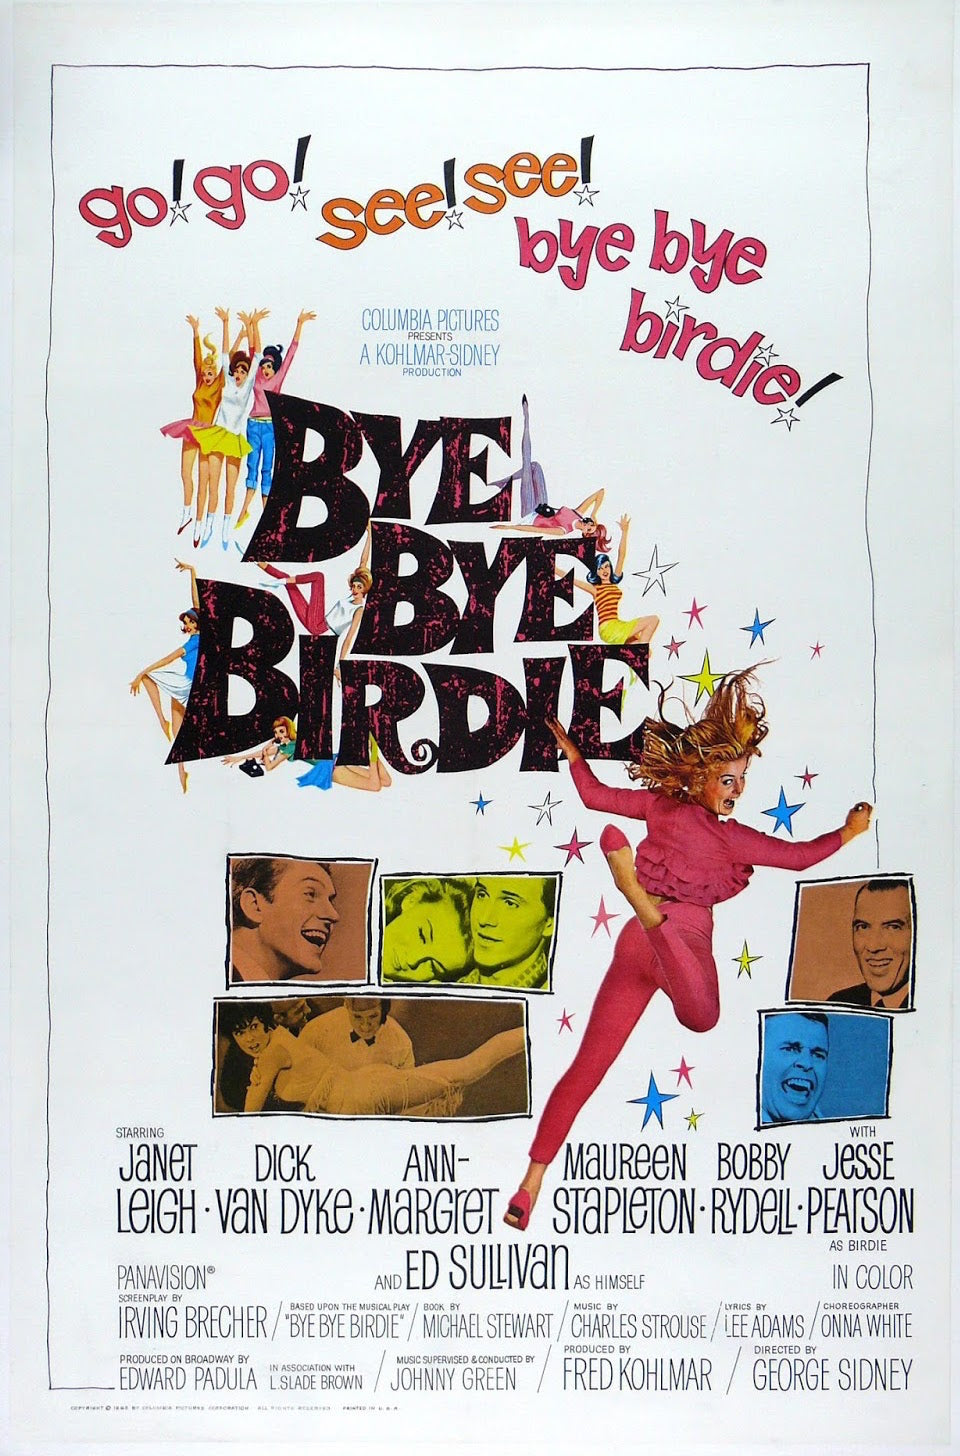 Dick Van Dyke signed Bye Bye Birdie Poster Image (8x10, 11x17)